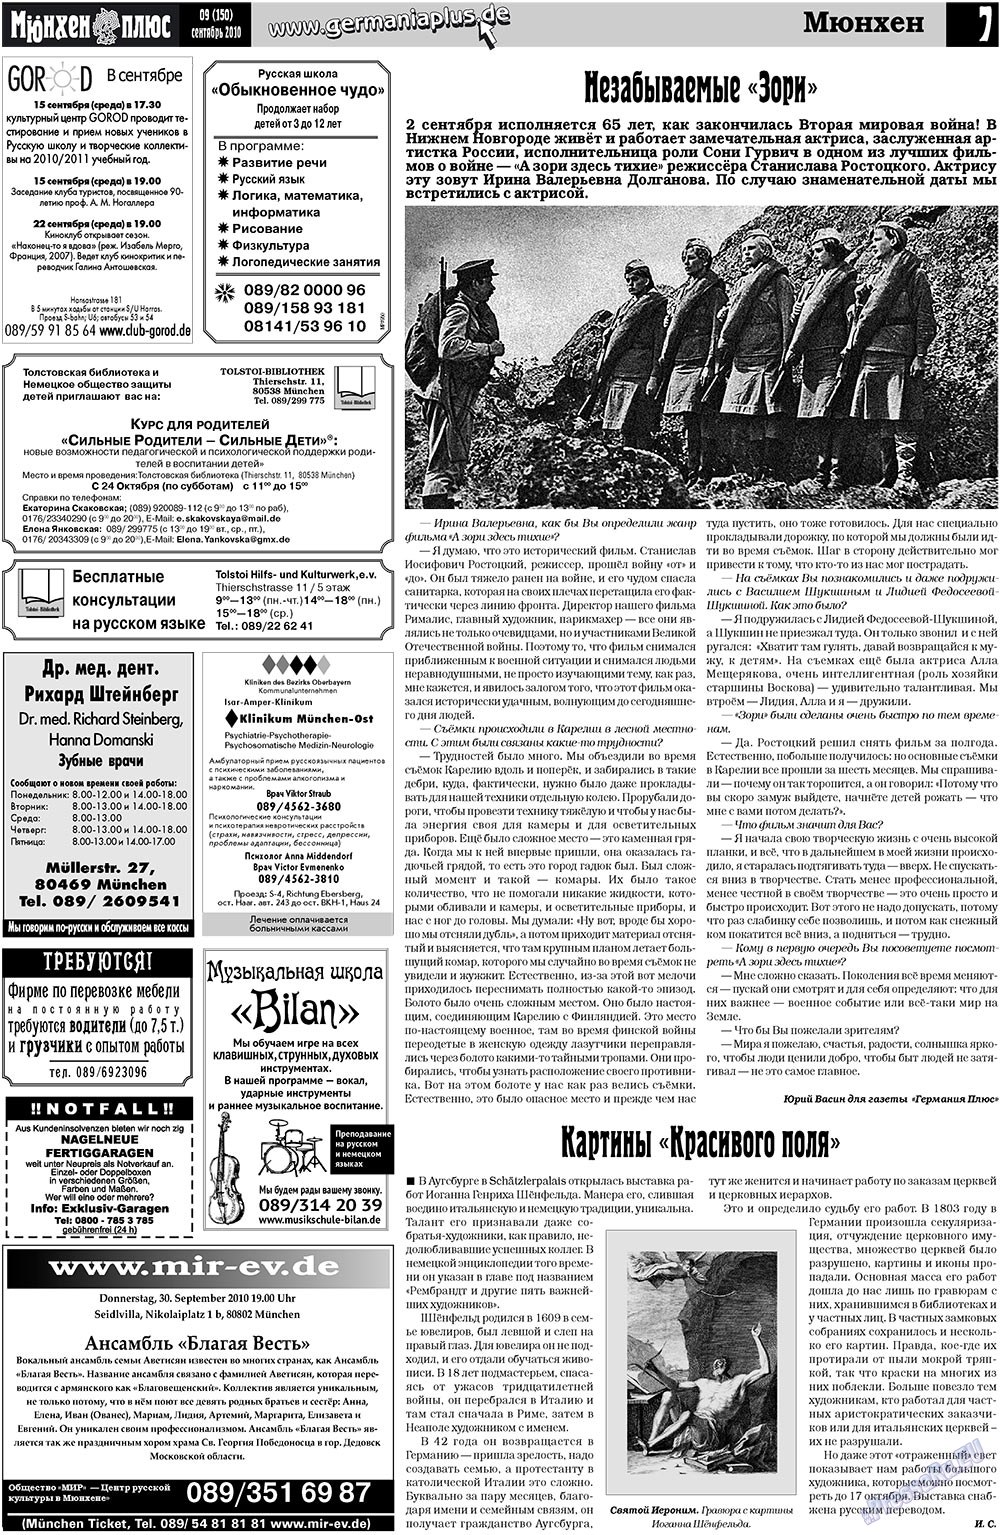 Германия плюс (газета). 2010 год, номер 9, стр. 7